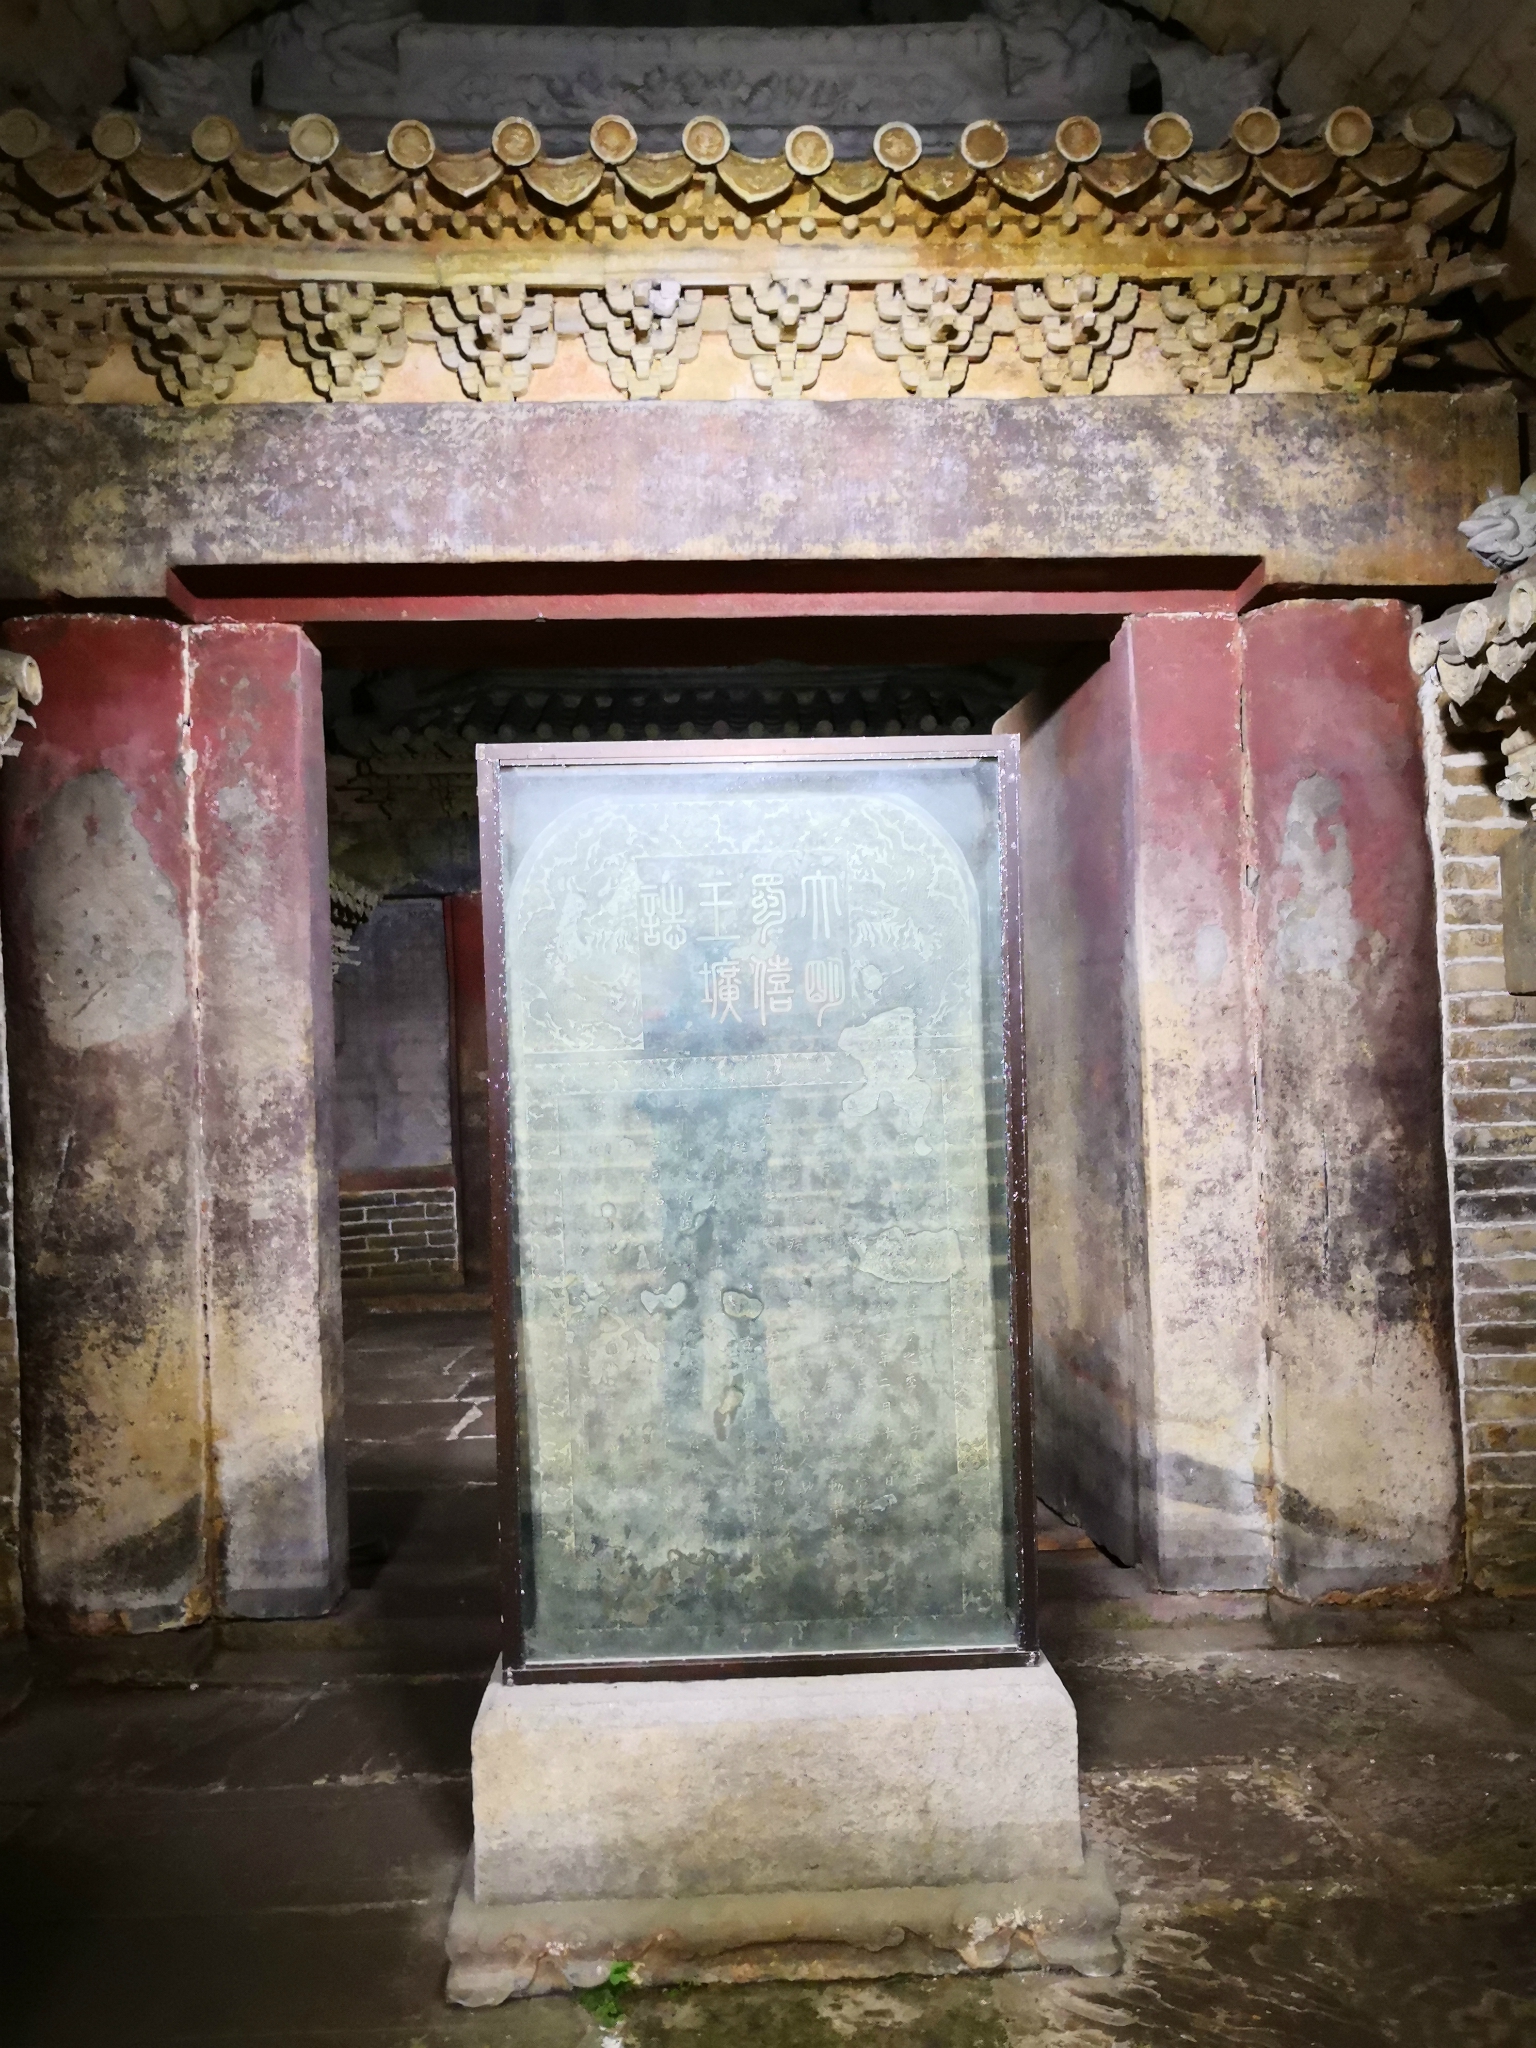 僖王陵为中心散布10余座明代蜀府诸王及王妃墓葬,形成了一处类似北京